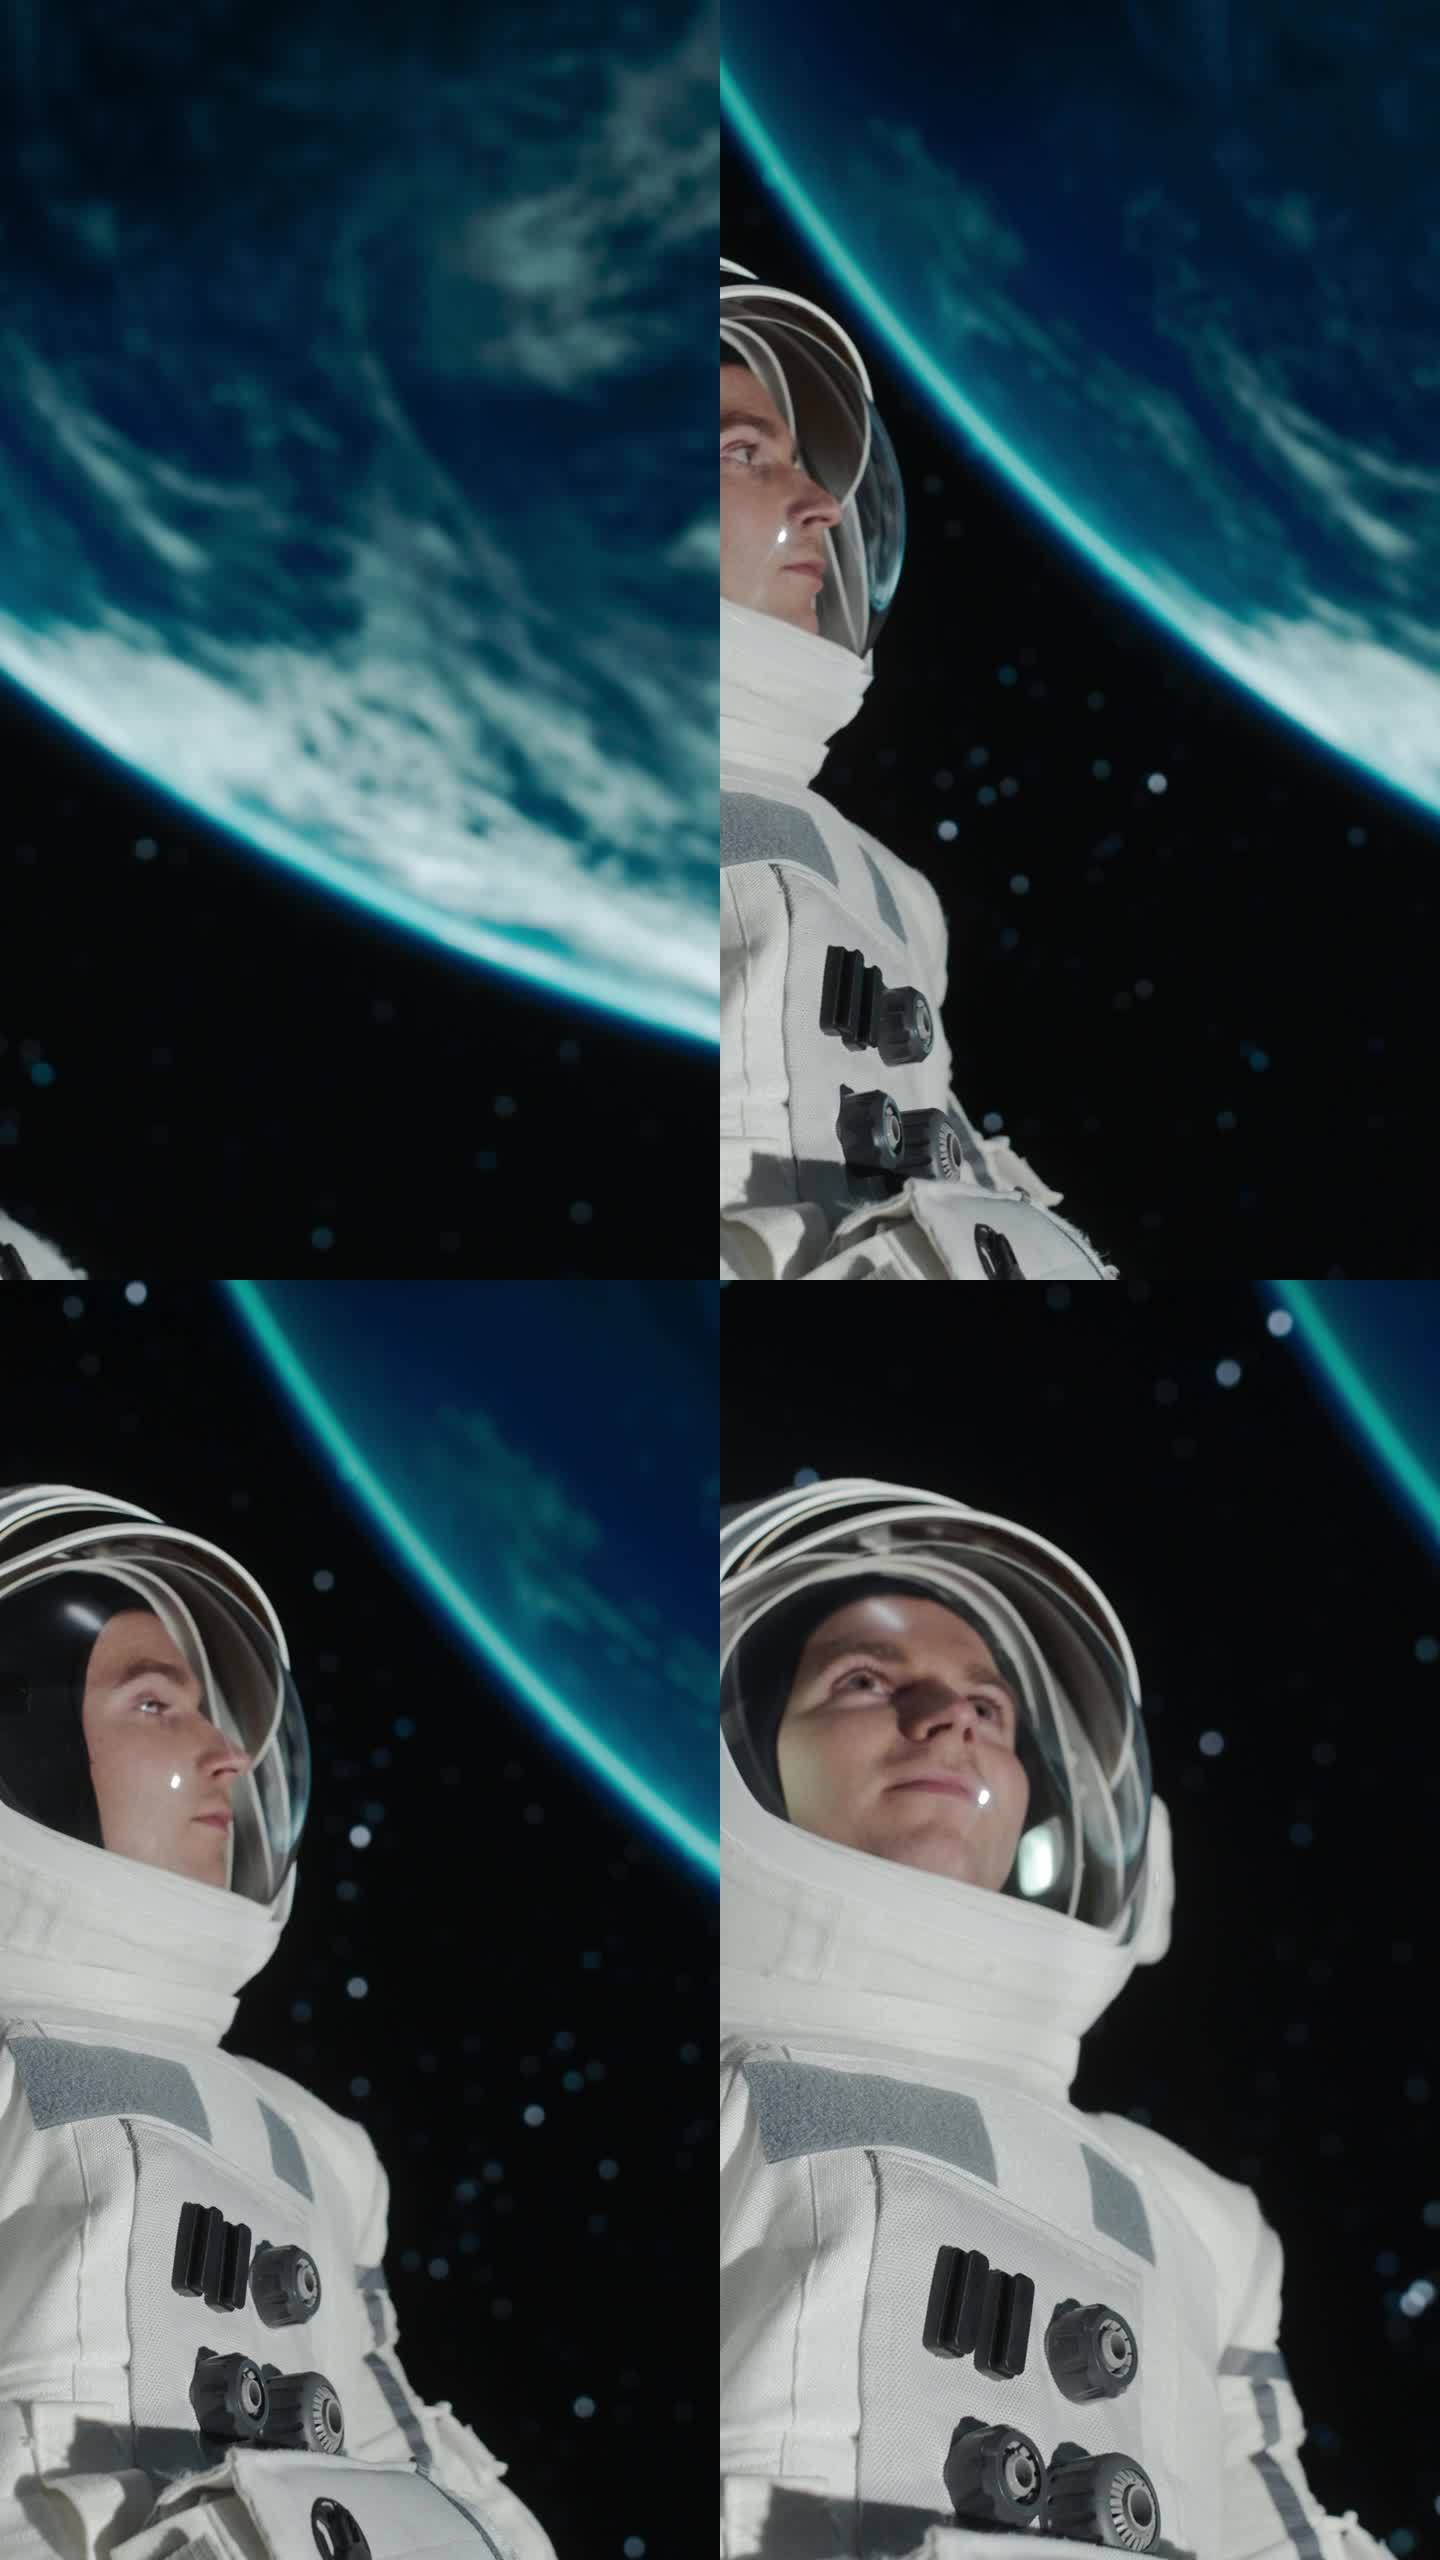 竖屏:一名戴着头盔和宇航服的白人男性宇航员在外太空的肖像，他漂浮在零重力中，惊奇地环顾四周。太空旅行